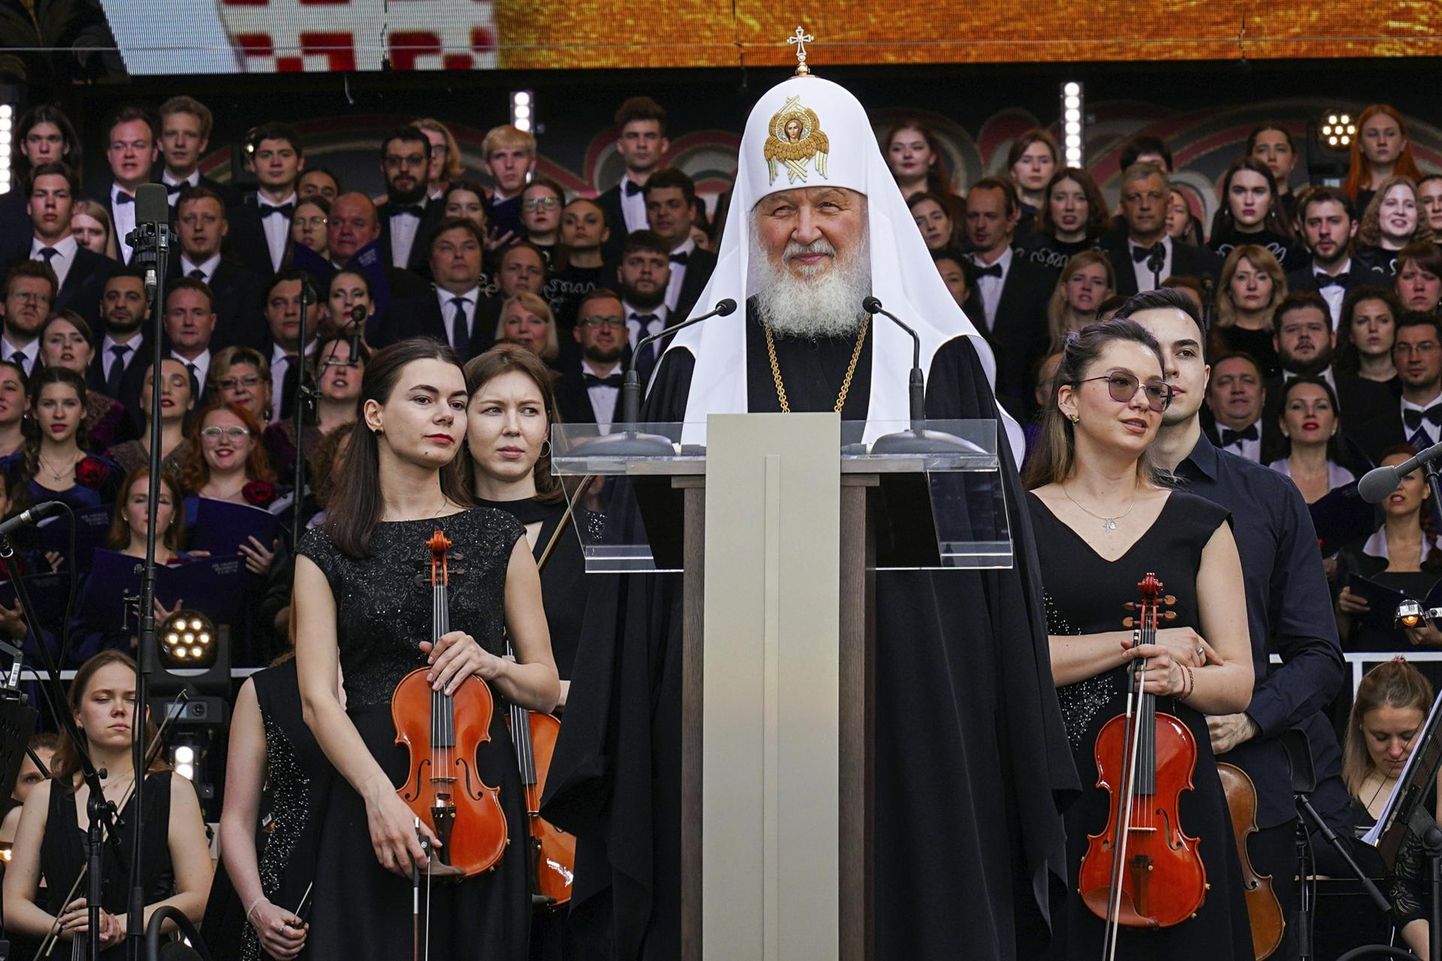 Vene õigueusukiriku ülemvaimulik patriarh Kirill kutsus üles rakendama abordikeeldu föderaalsel tasandil.